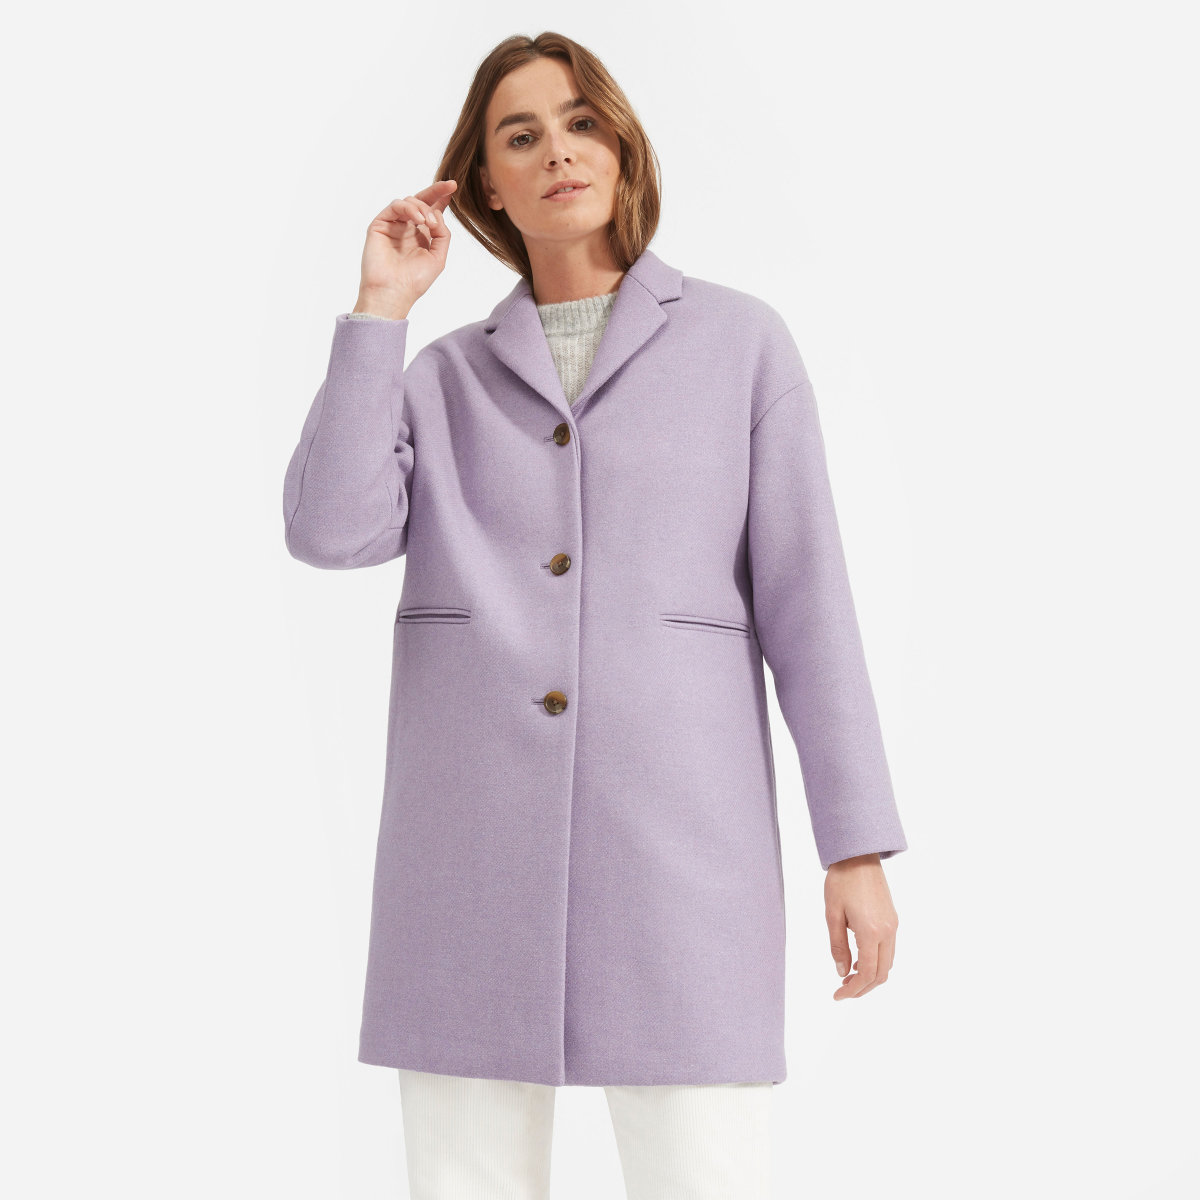 Everlane wool blend cocoon coat in lavender. Details at une femme d'un certain age.